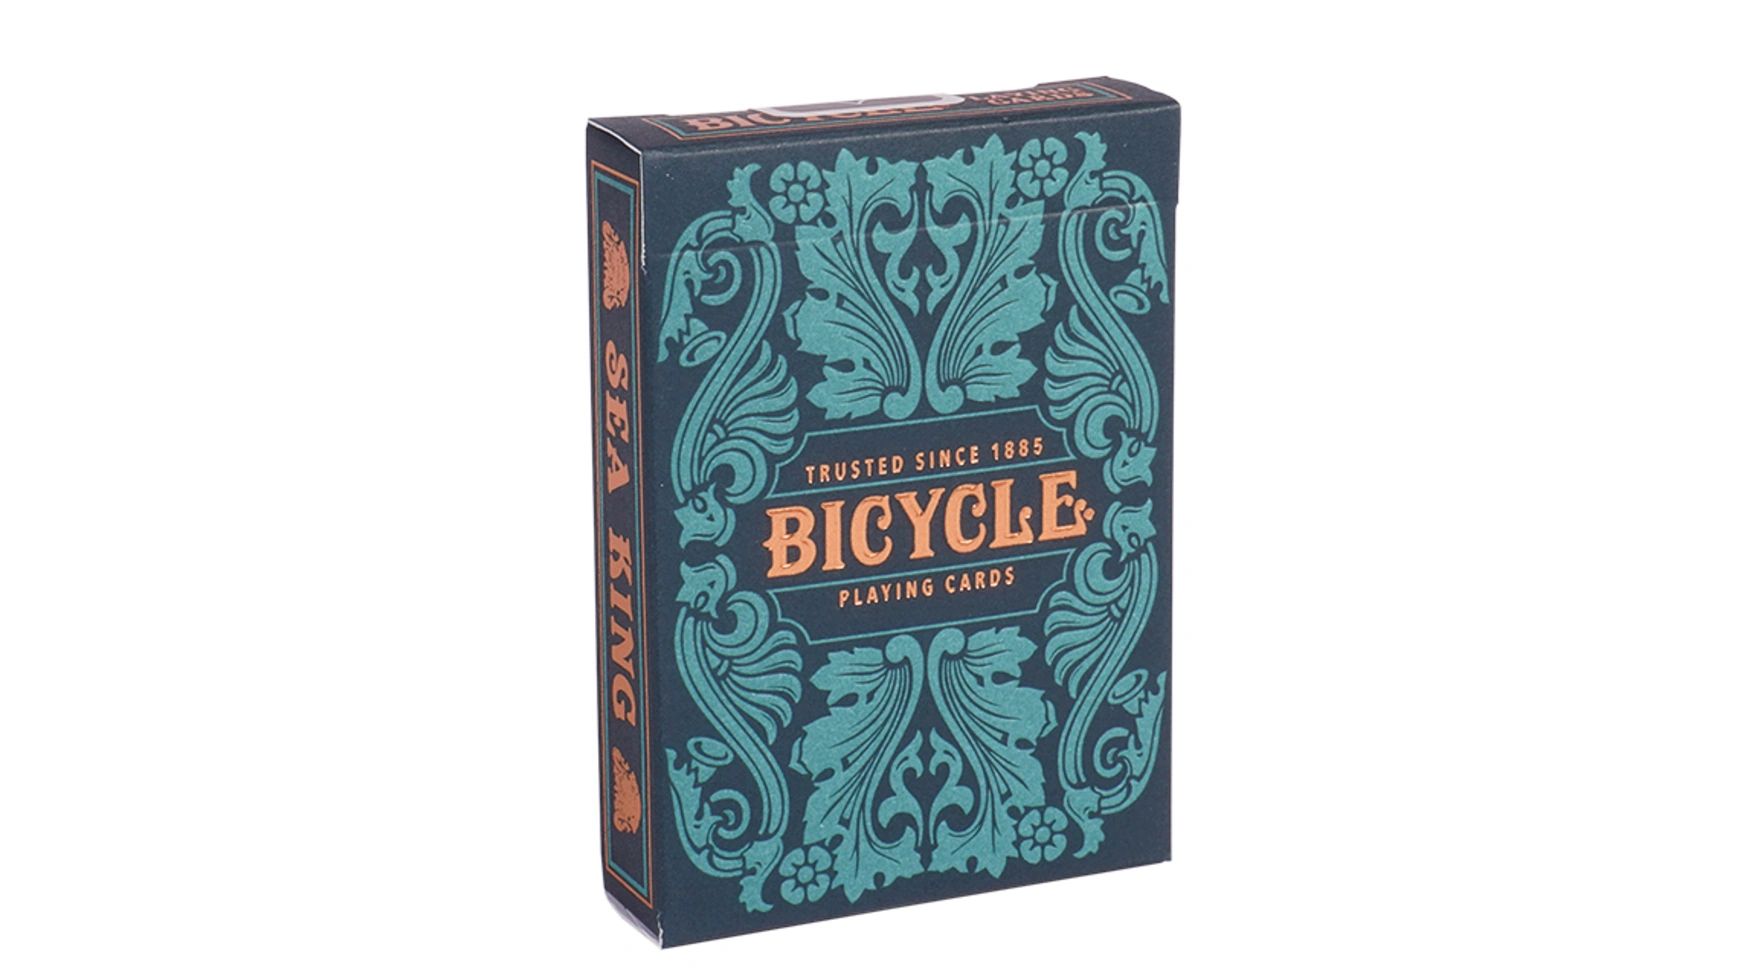 Bicycle Морской король, игральные карты uspcc игральные карты bicycle pro poker peek uspcc сша 54 карты